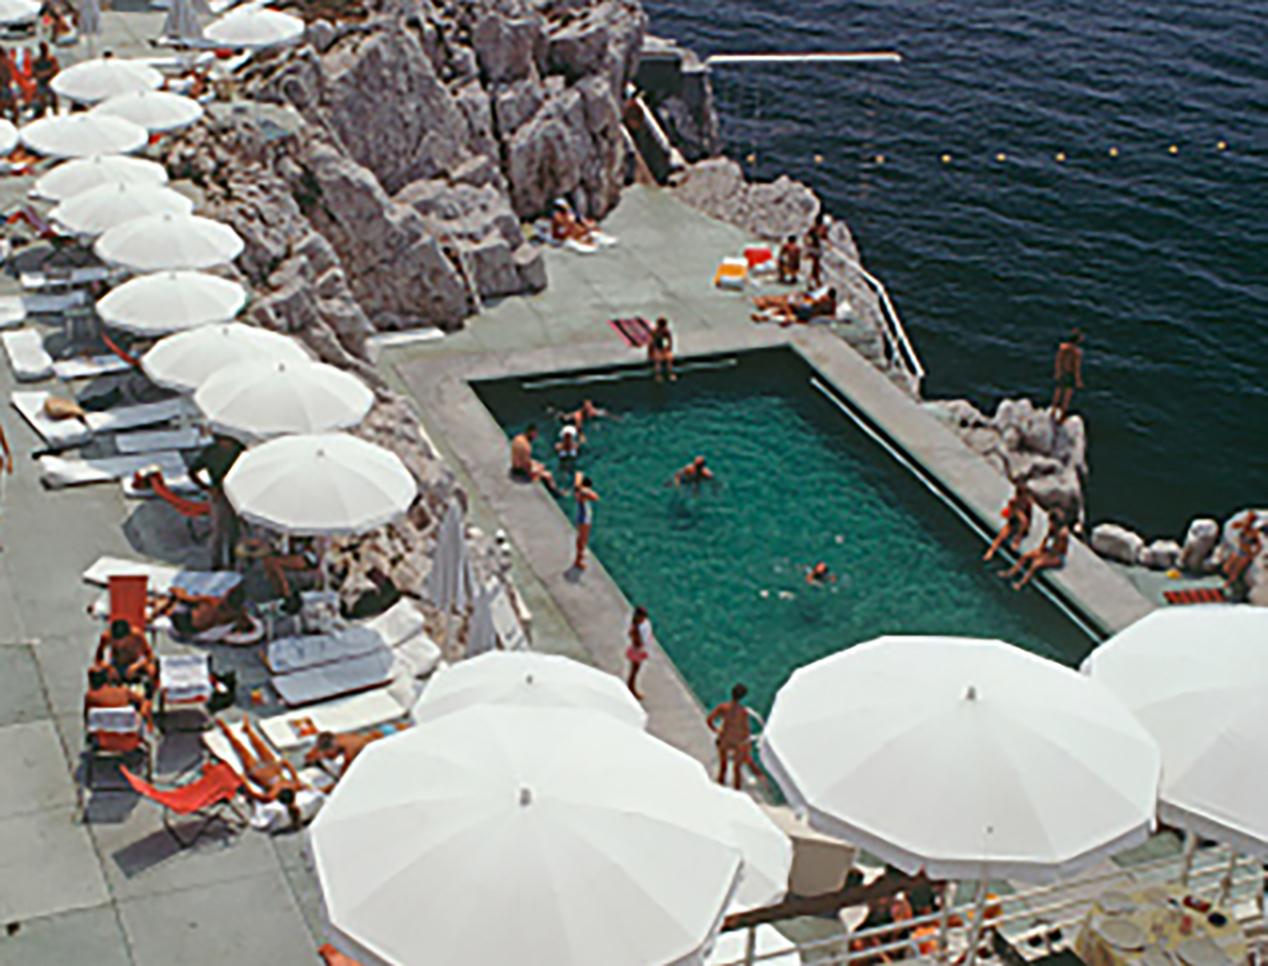 Hotel du Cap Eden-Roc, Nachlassausgabe, Fotografie (Poolside in Antibes) (Realismus), Photograph, von Slim Aarons